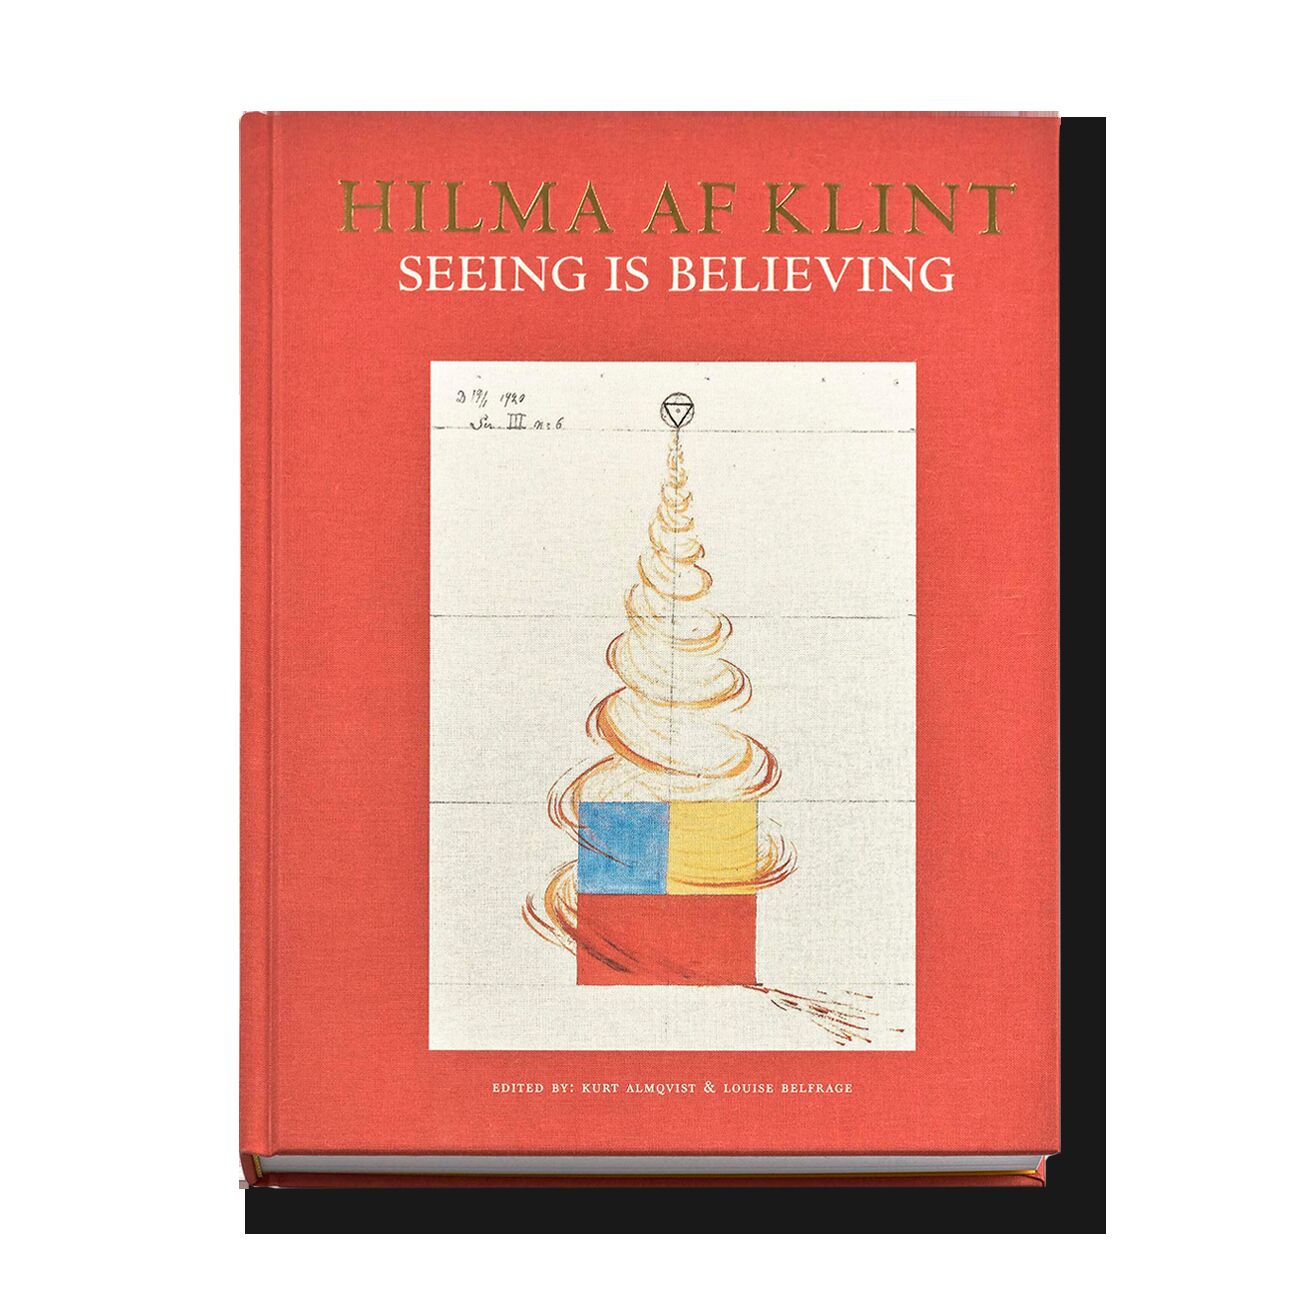 Hilma af Klint: Seeing is believing